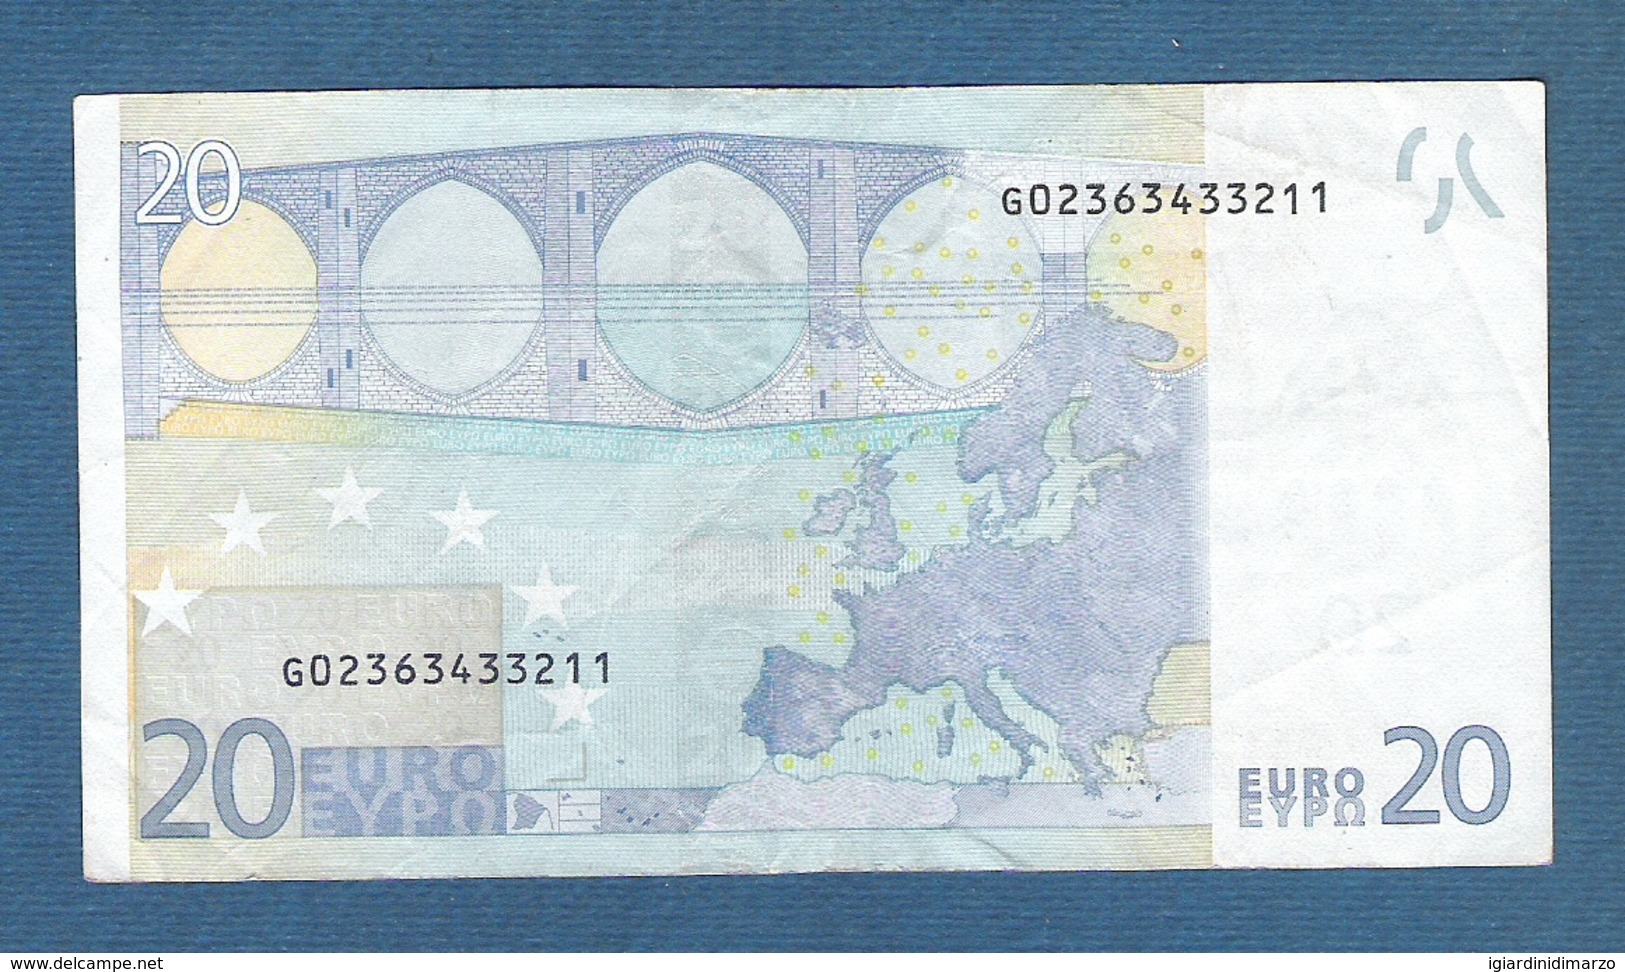 EURO - CIPRO - 2002 - BANCONOTA DA 20 EURO TRICHET SERIE G (G013H4) - CIRCOLATA-CIRCULATED - IN BUONE CONDIZIONI. - 20 Euro